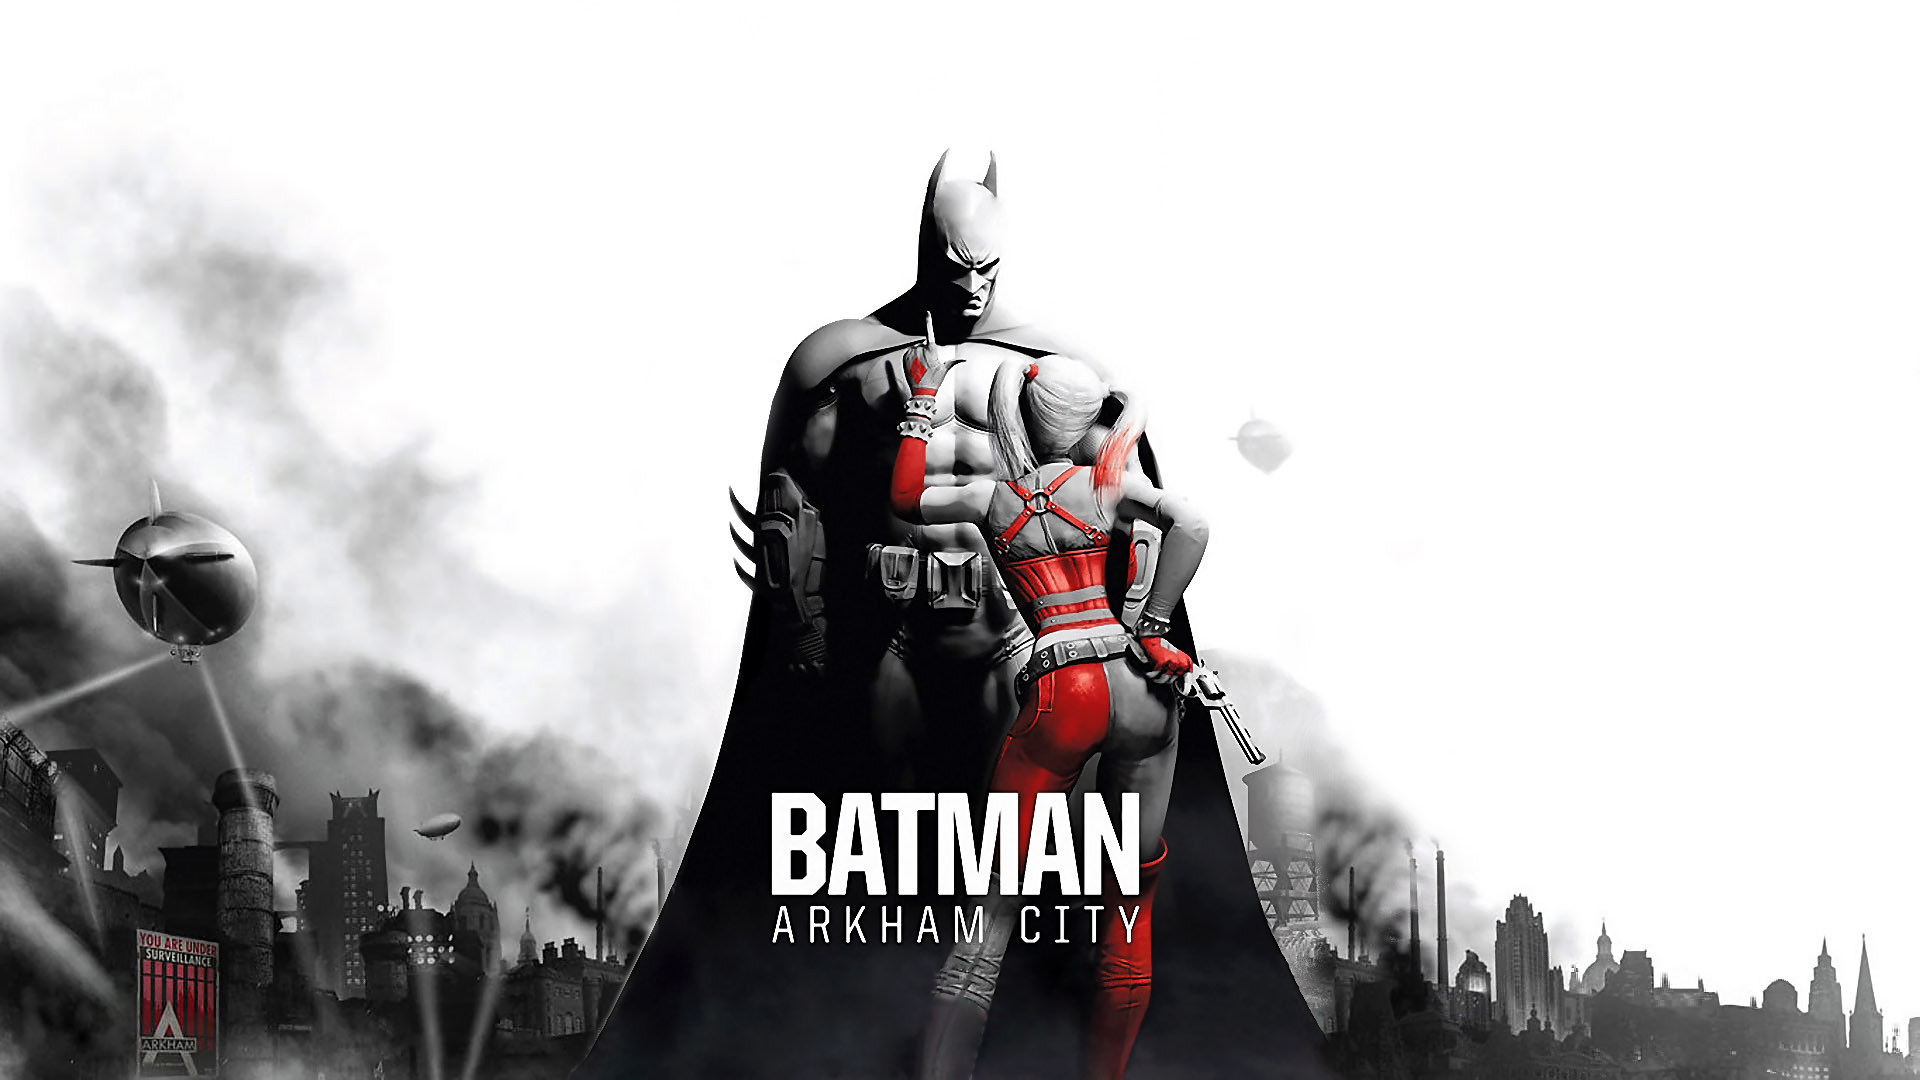 Batman Arkham City 1080p Wallpaper - Batman Arkham City Harley Quinn - HD Wallpaper 